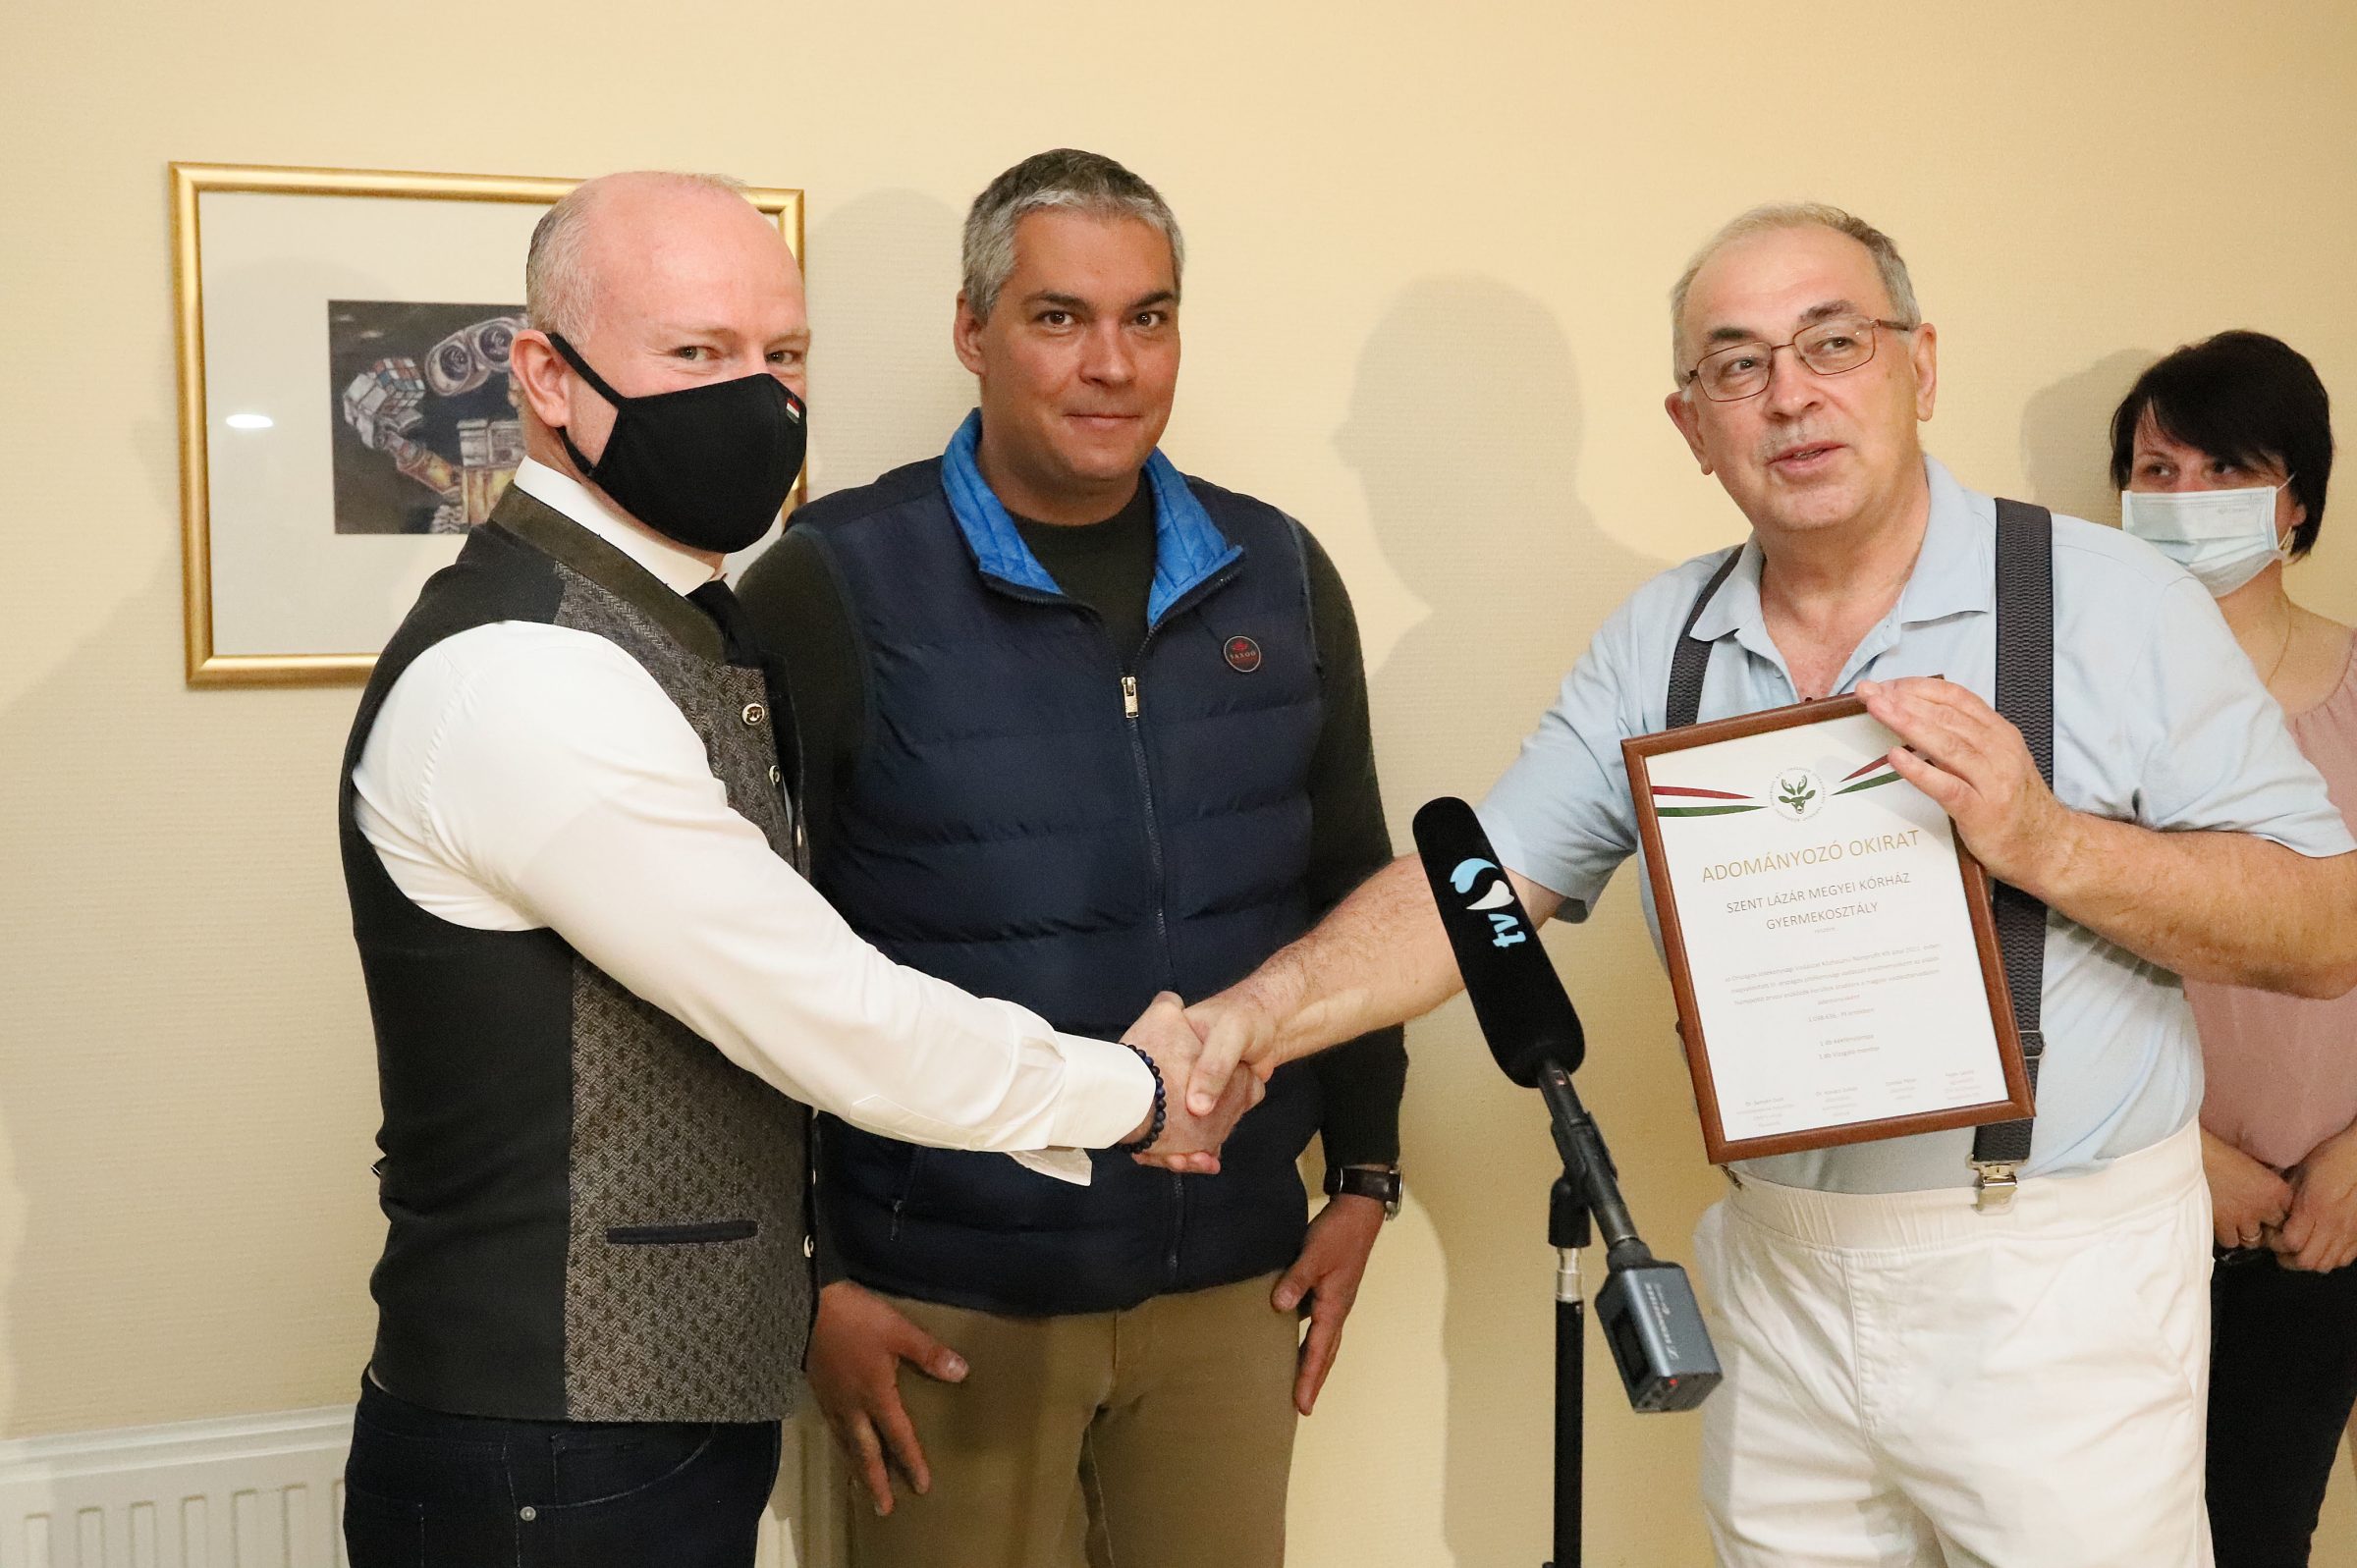 Balról: Fejes László átadja az adományozó okiratot Dr. Szabó Attila főorvosnak